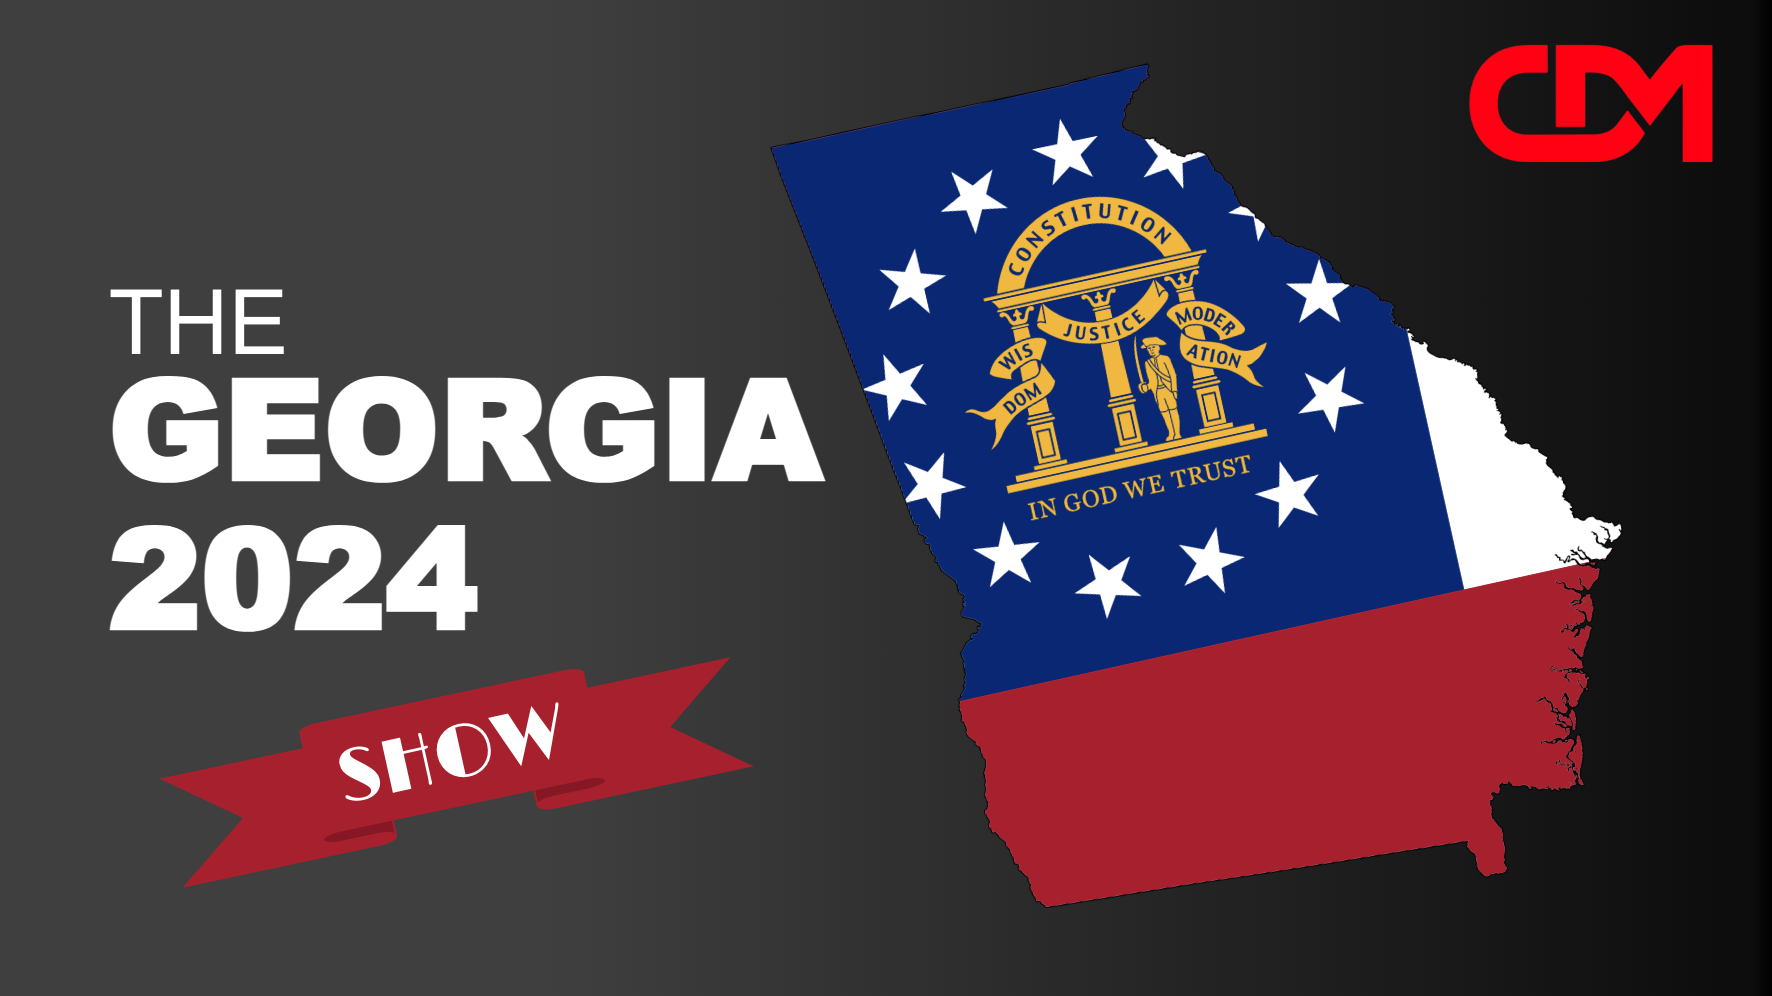 LIVE 2pm EST: The Georgia 2024 Show! Chris Gleason, Mallory Staples, Mockingbird Media, Simona Papadopolous